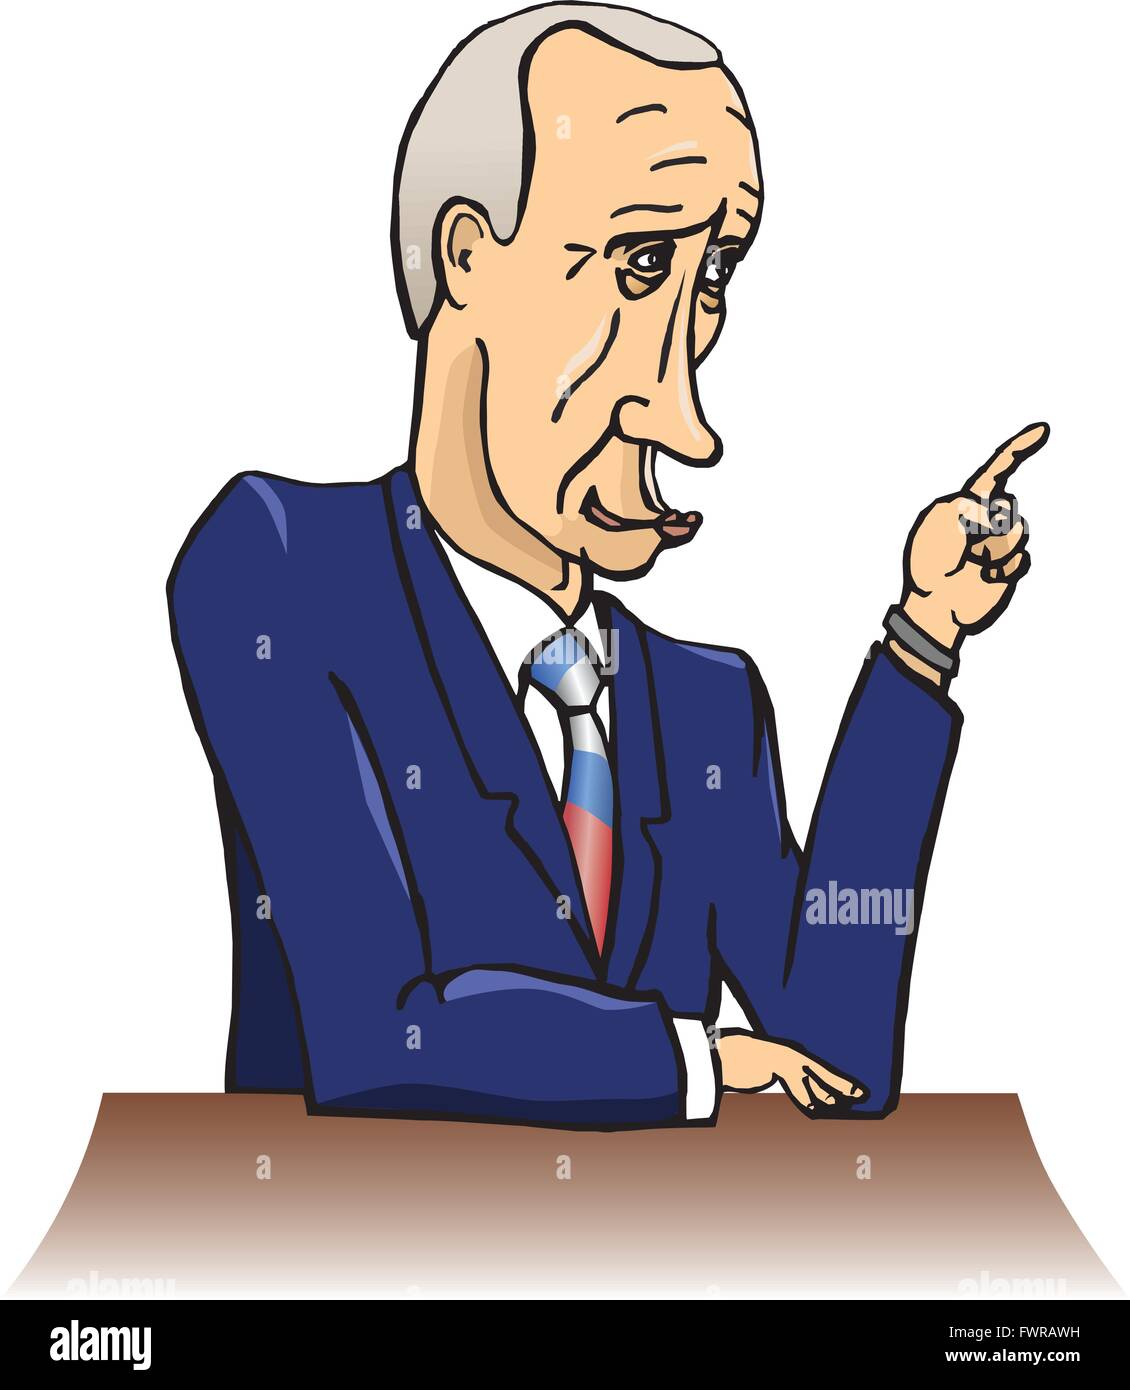 Le président de la Fédération de Russie Vladimir Poutine Illustration de Vecteur